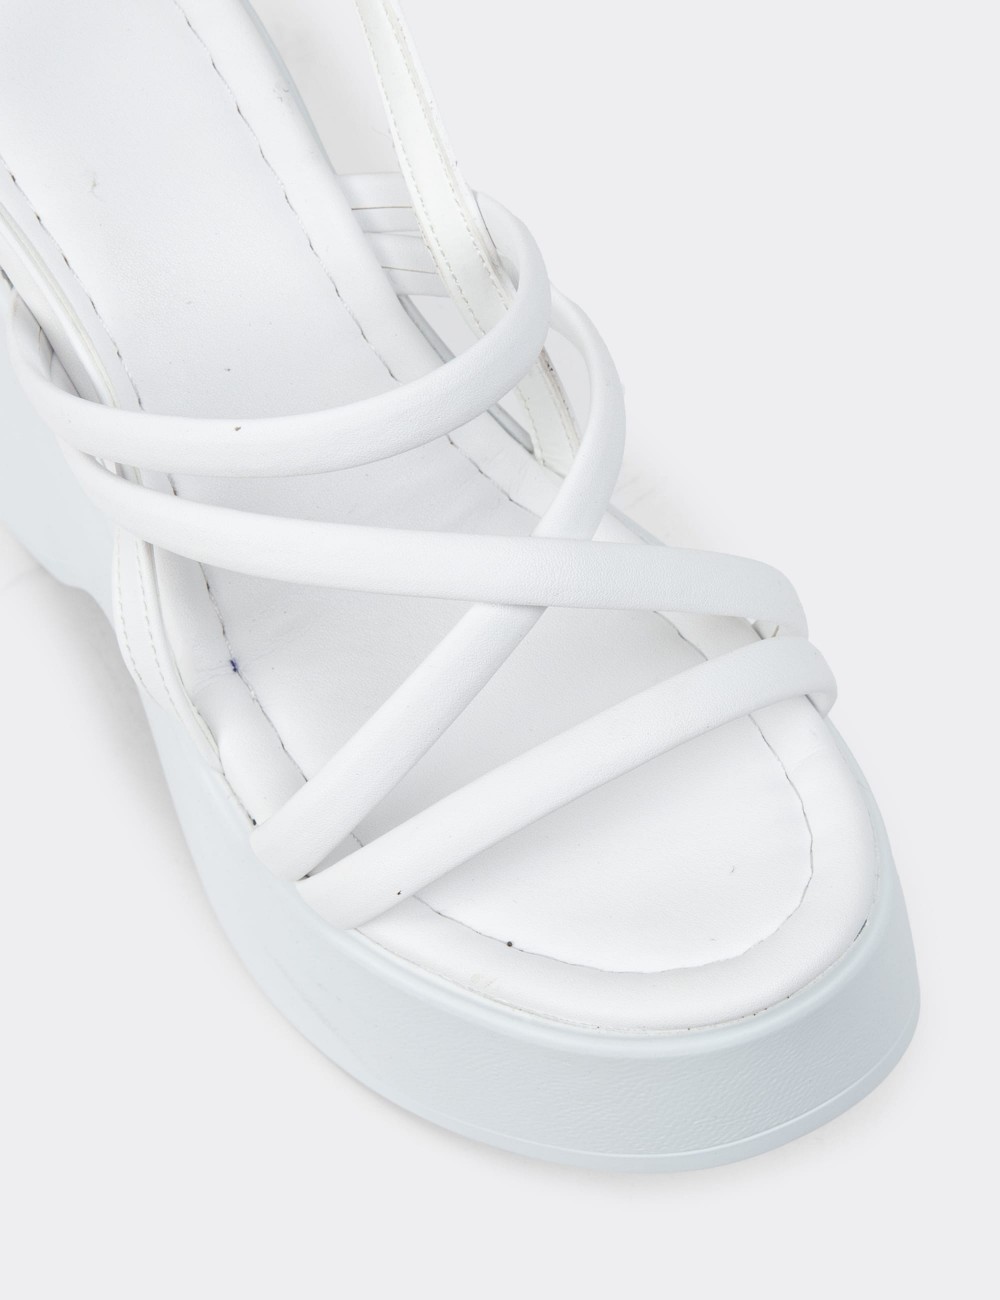 White Sandals - DLG04ZBYZC01